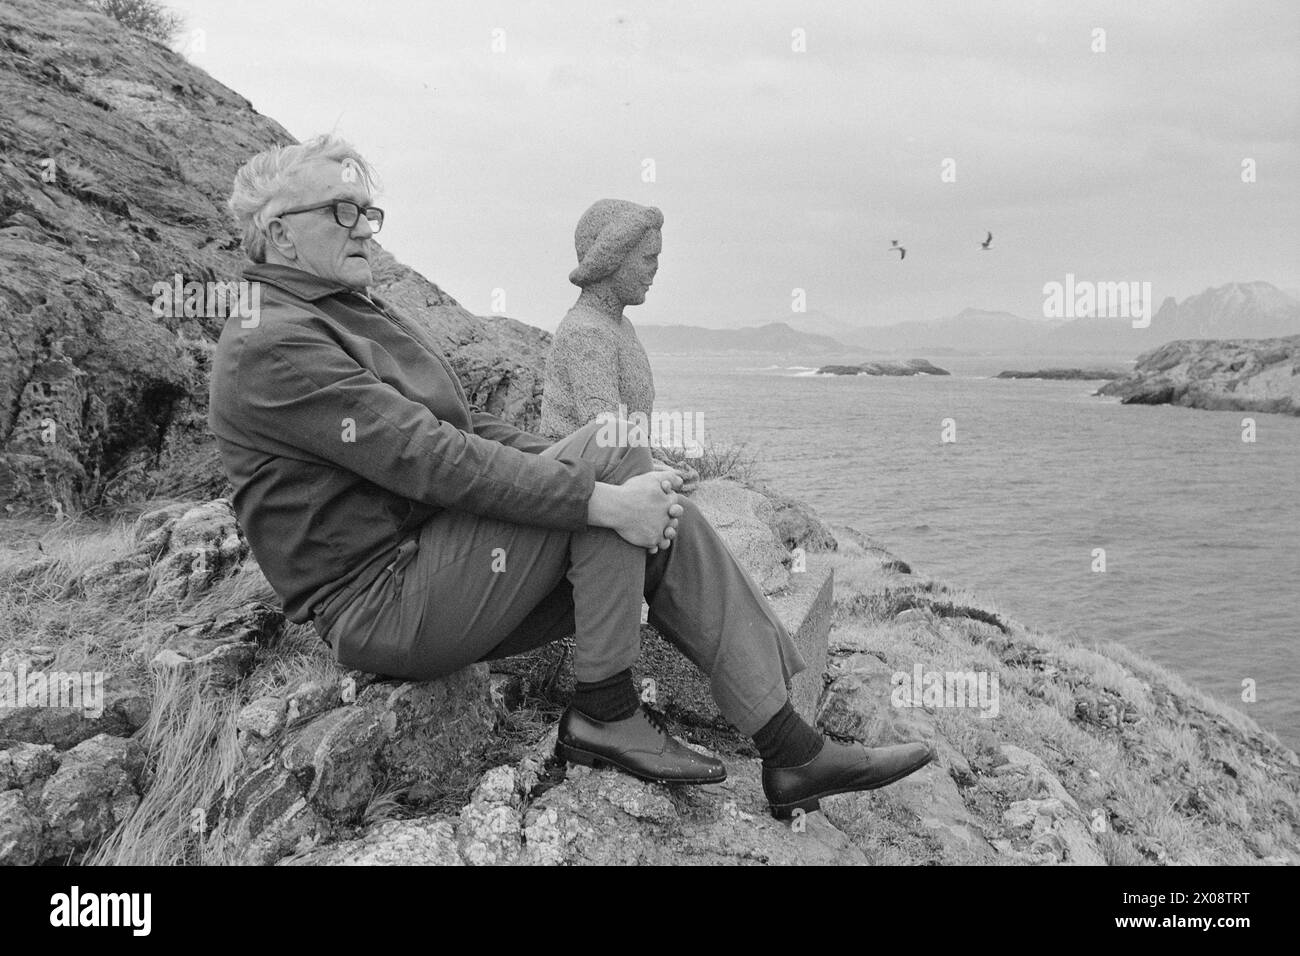 Attuale 16 - 6 -1973: Cento case e una mannLess di 20 anni fa, Bjørnsund era una comunità vivace. Oggi, c'è solo una persona rimasta in questo villaggio di pescatori. Ora Bjørnstad diventerà una destinazione turistica. La gente è ansiosa di comprare una casa qui in questa solitudine. Il 71enne Rolf Thoresen è venuto a patti con la sua esistenza solitaria su Bjørnsund. Anche la fisher girl, la statua che simboleggia la solitudine e la perdita, siede sola e abbandonata al suo avamposto. Foto: Sverre A. Børretzen / Aktuell / NTB ***FOTO NON ELABORATA*** Foto Stock